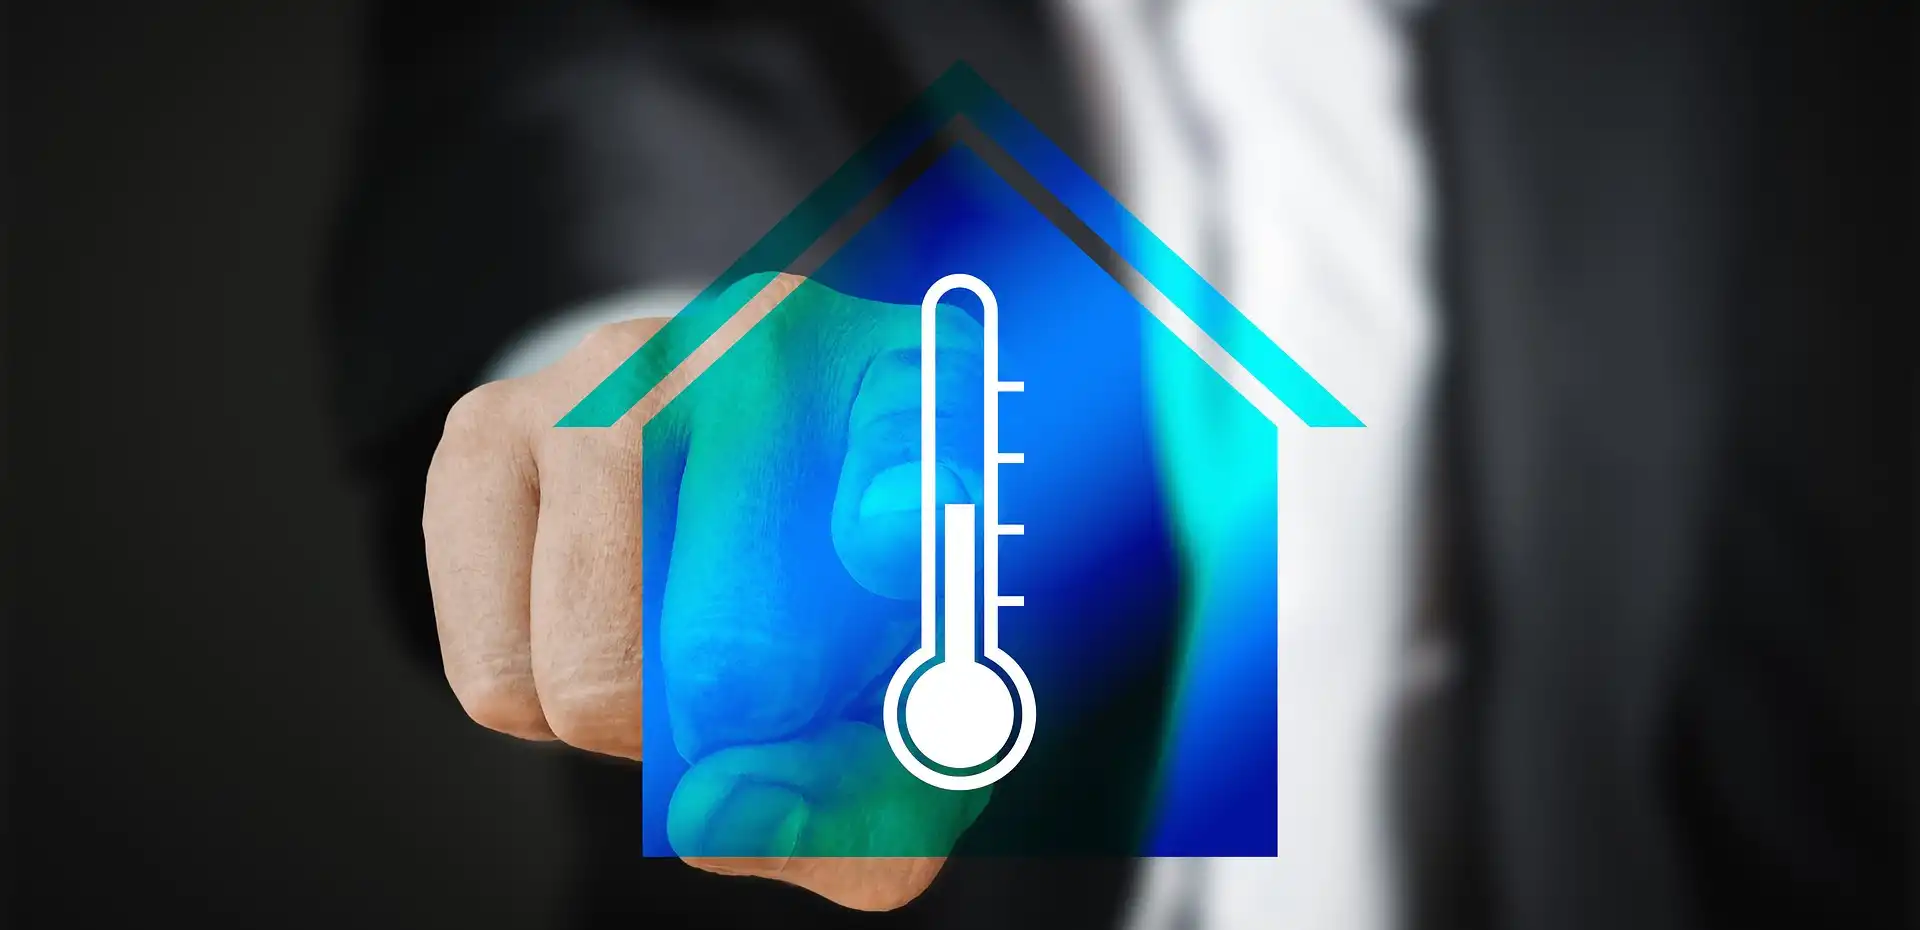 Home Automation System - Misuriamo la temperatura con il SONOFF mini - Preparazione Software